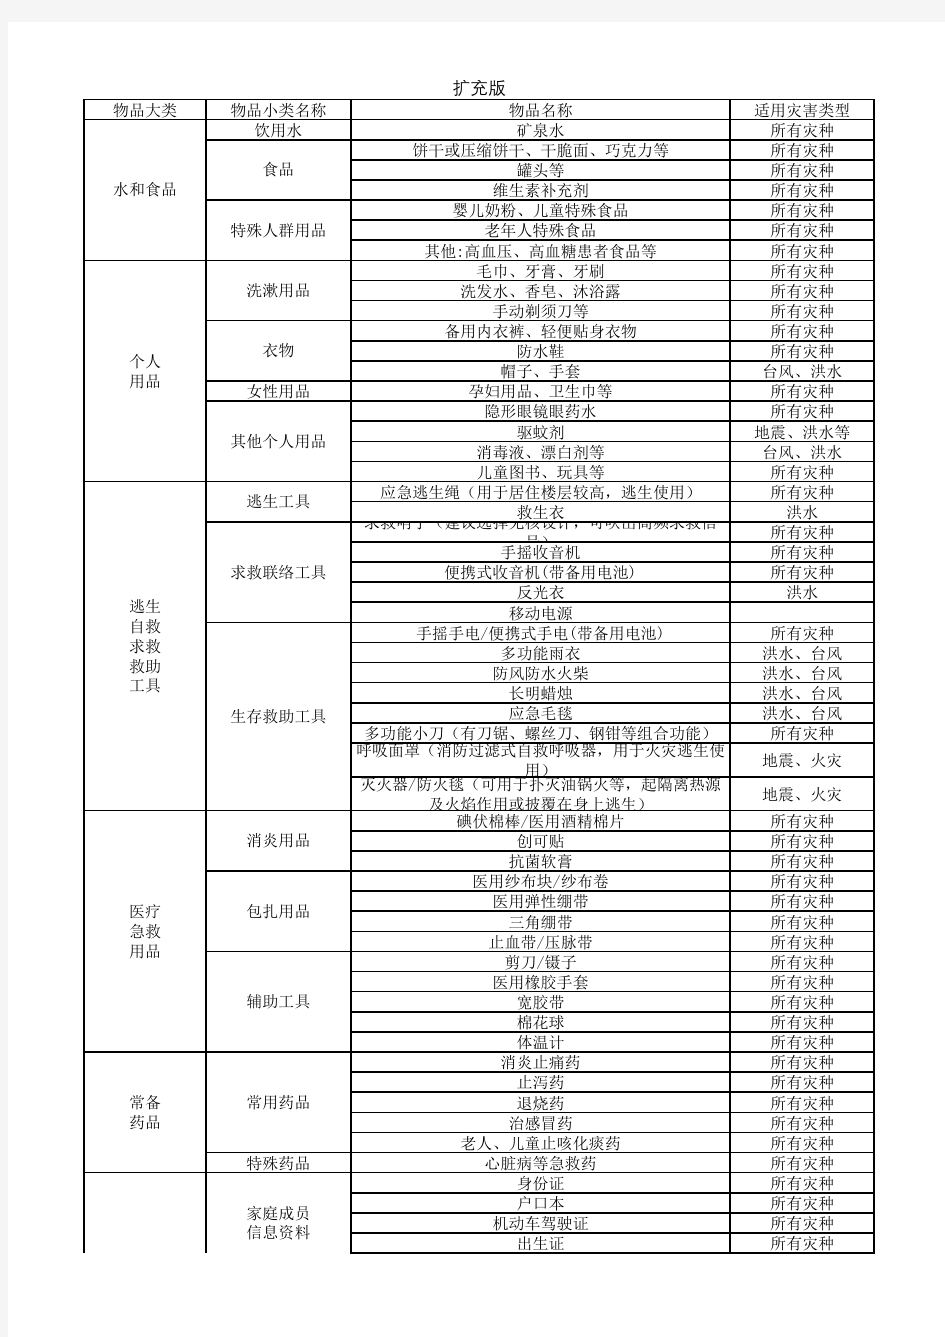 北京市家庭应急物资储备建议清单--基础版及扩充版